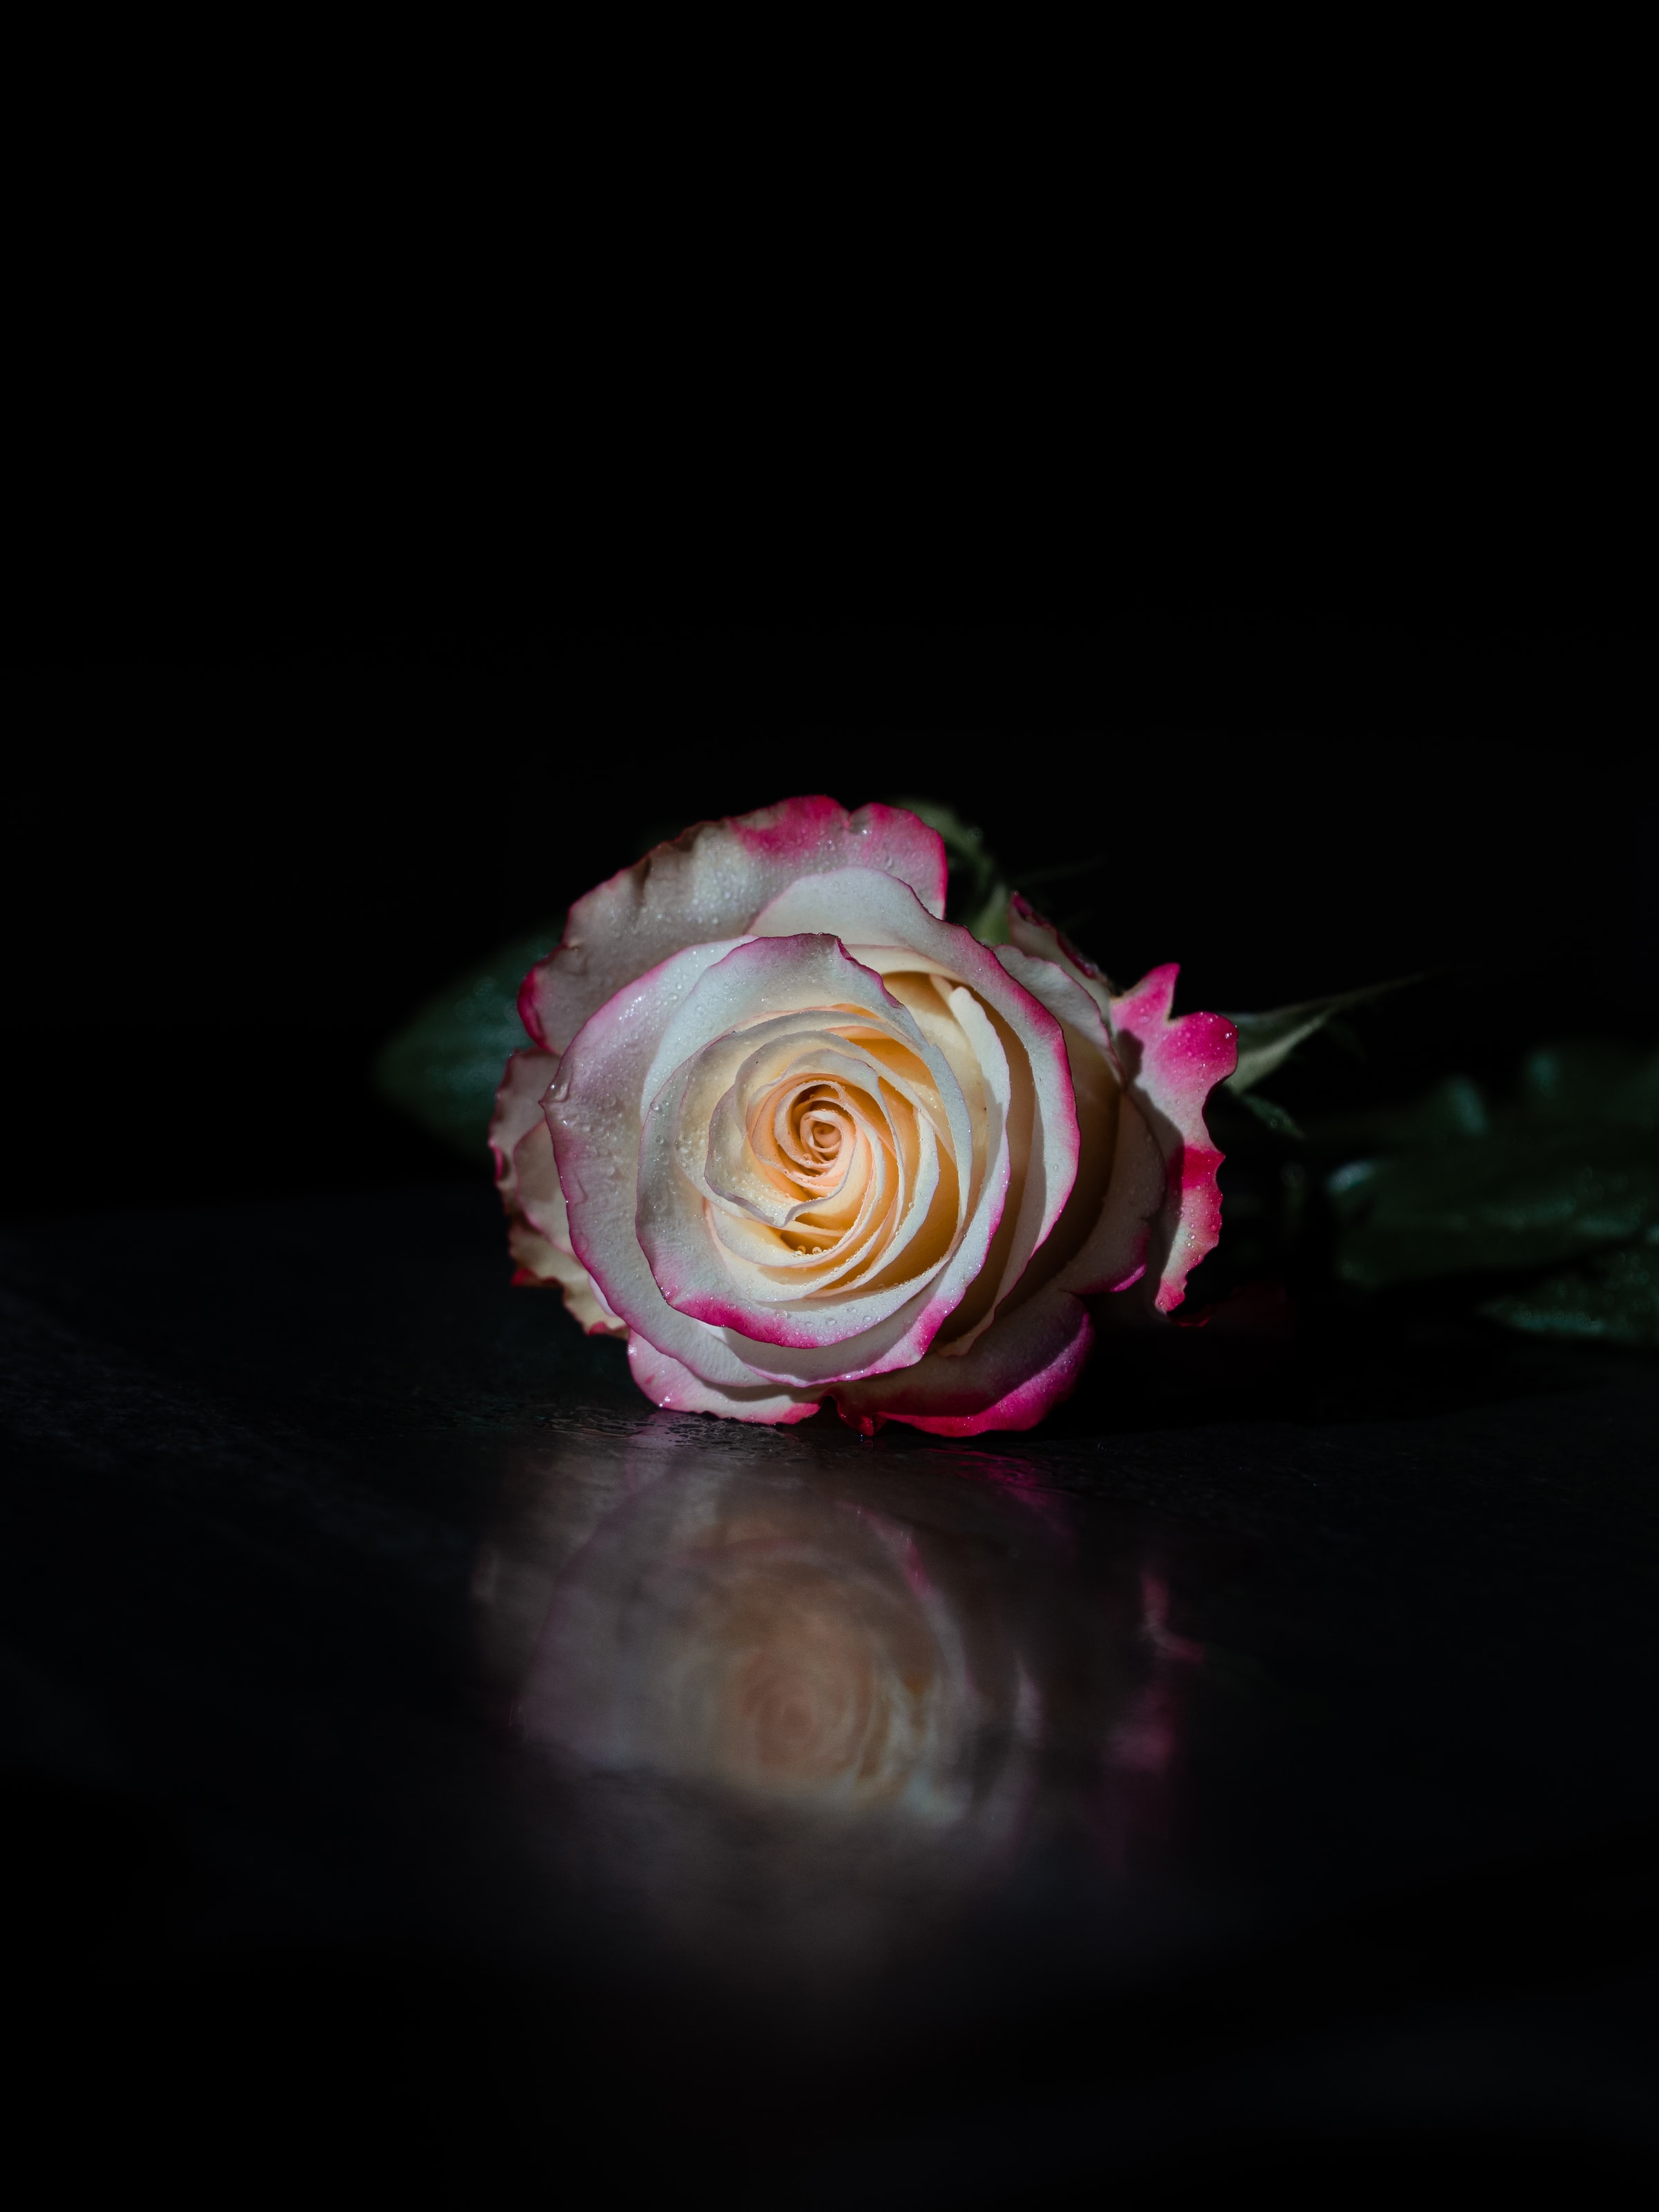 flower, rose flower, black, flowers, reflection, rose, petals